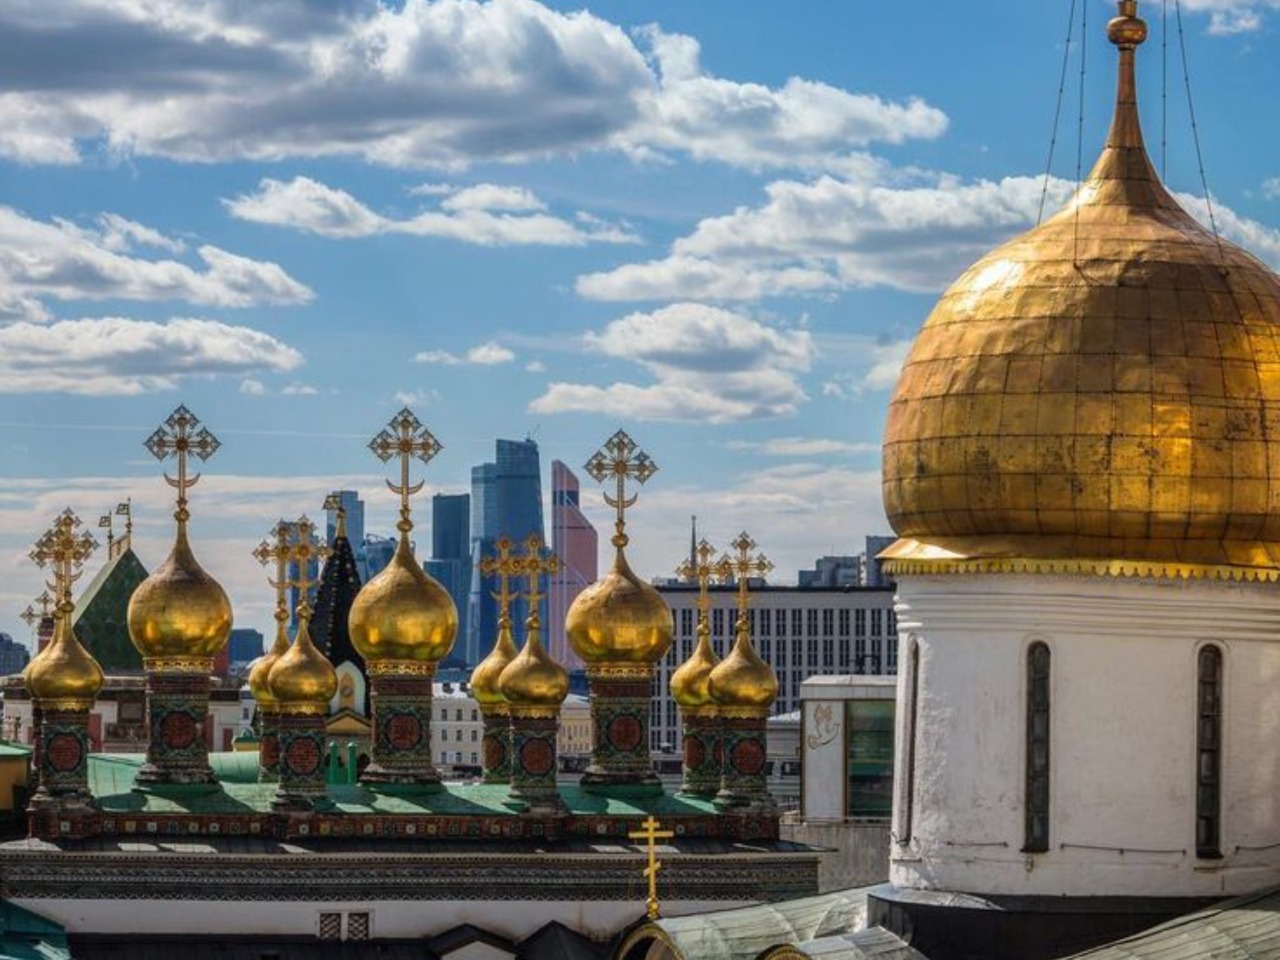 Кремль: главная столичная локация | Цена 17500₽, отзывы, описание экскурсии